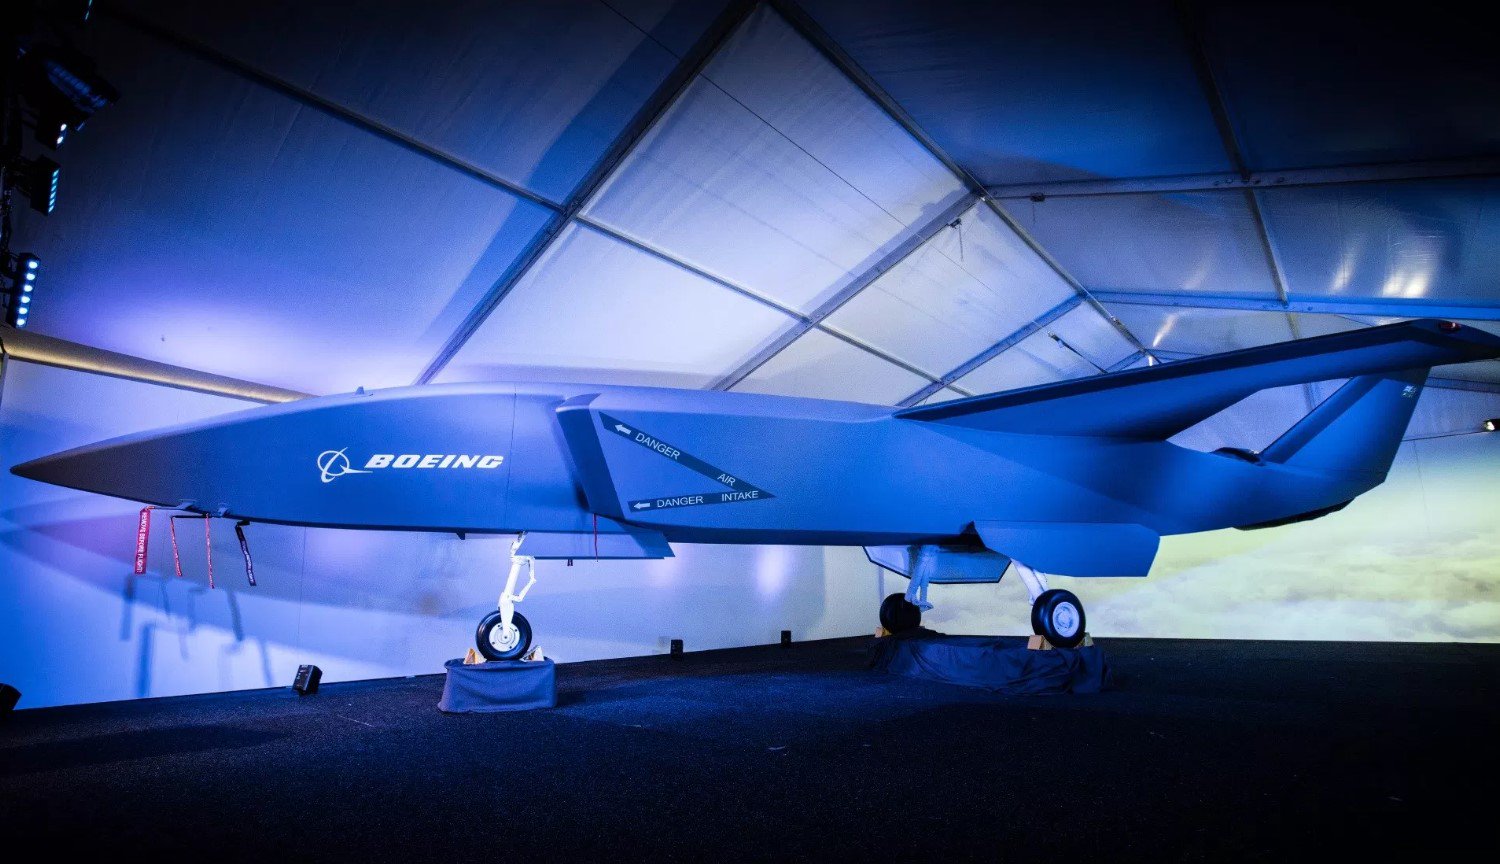 Ubemandede kampfly er Boeing i 2020